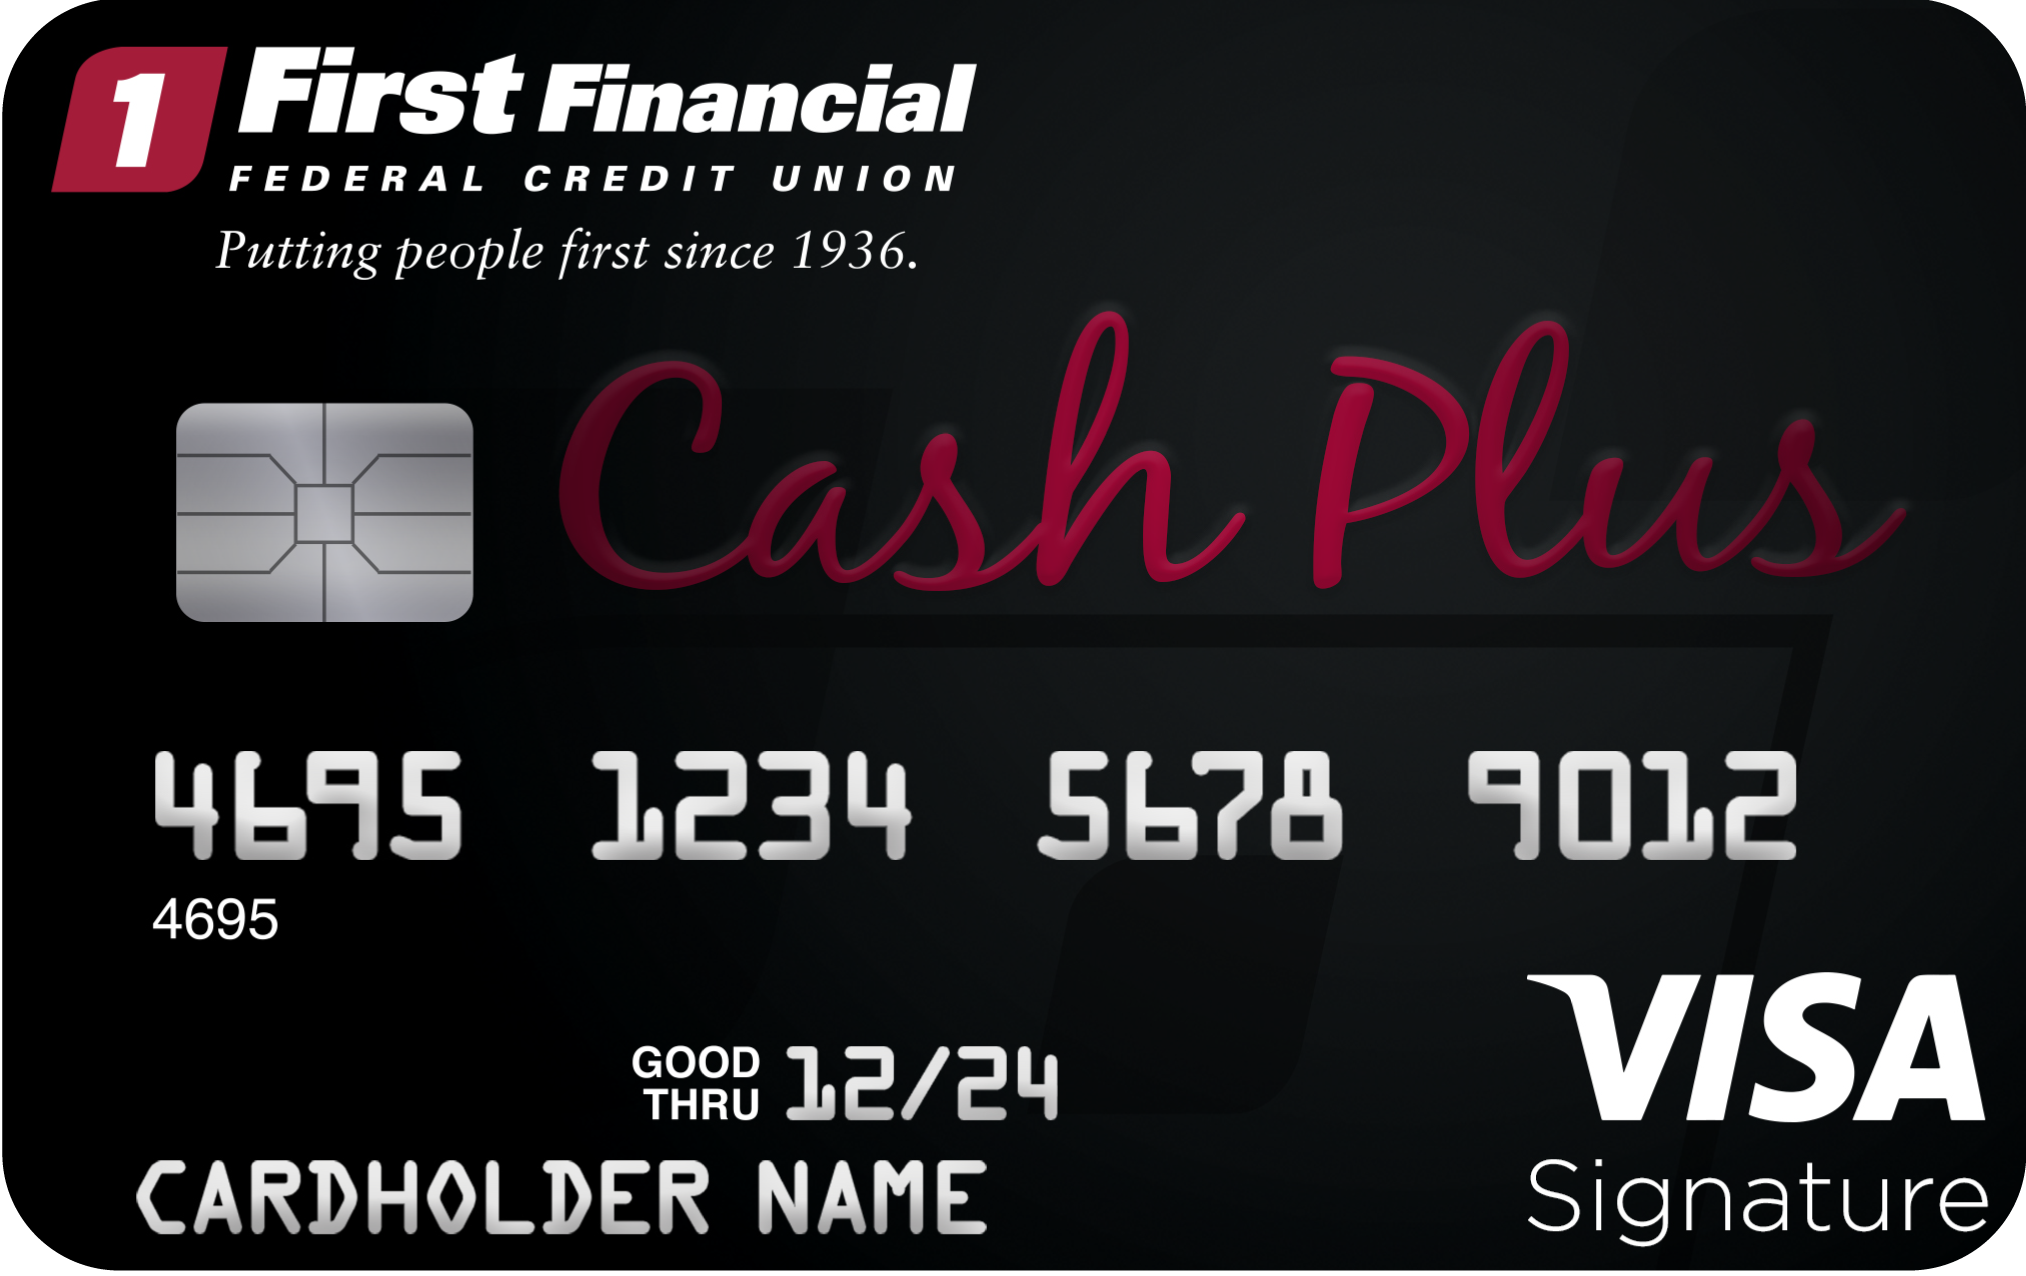 VISA signature cash plus card